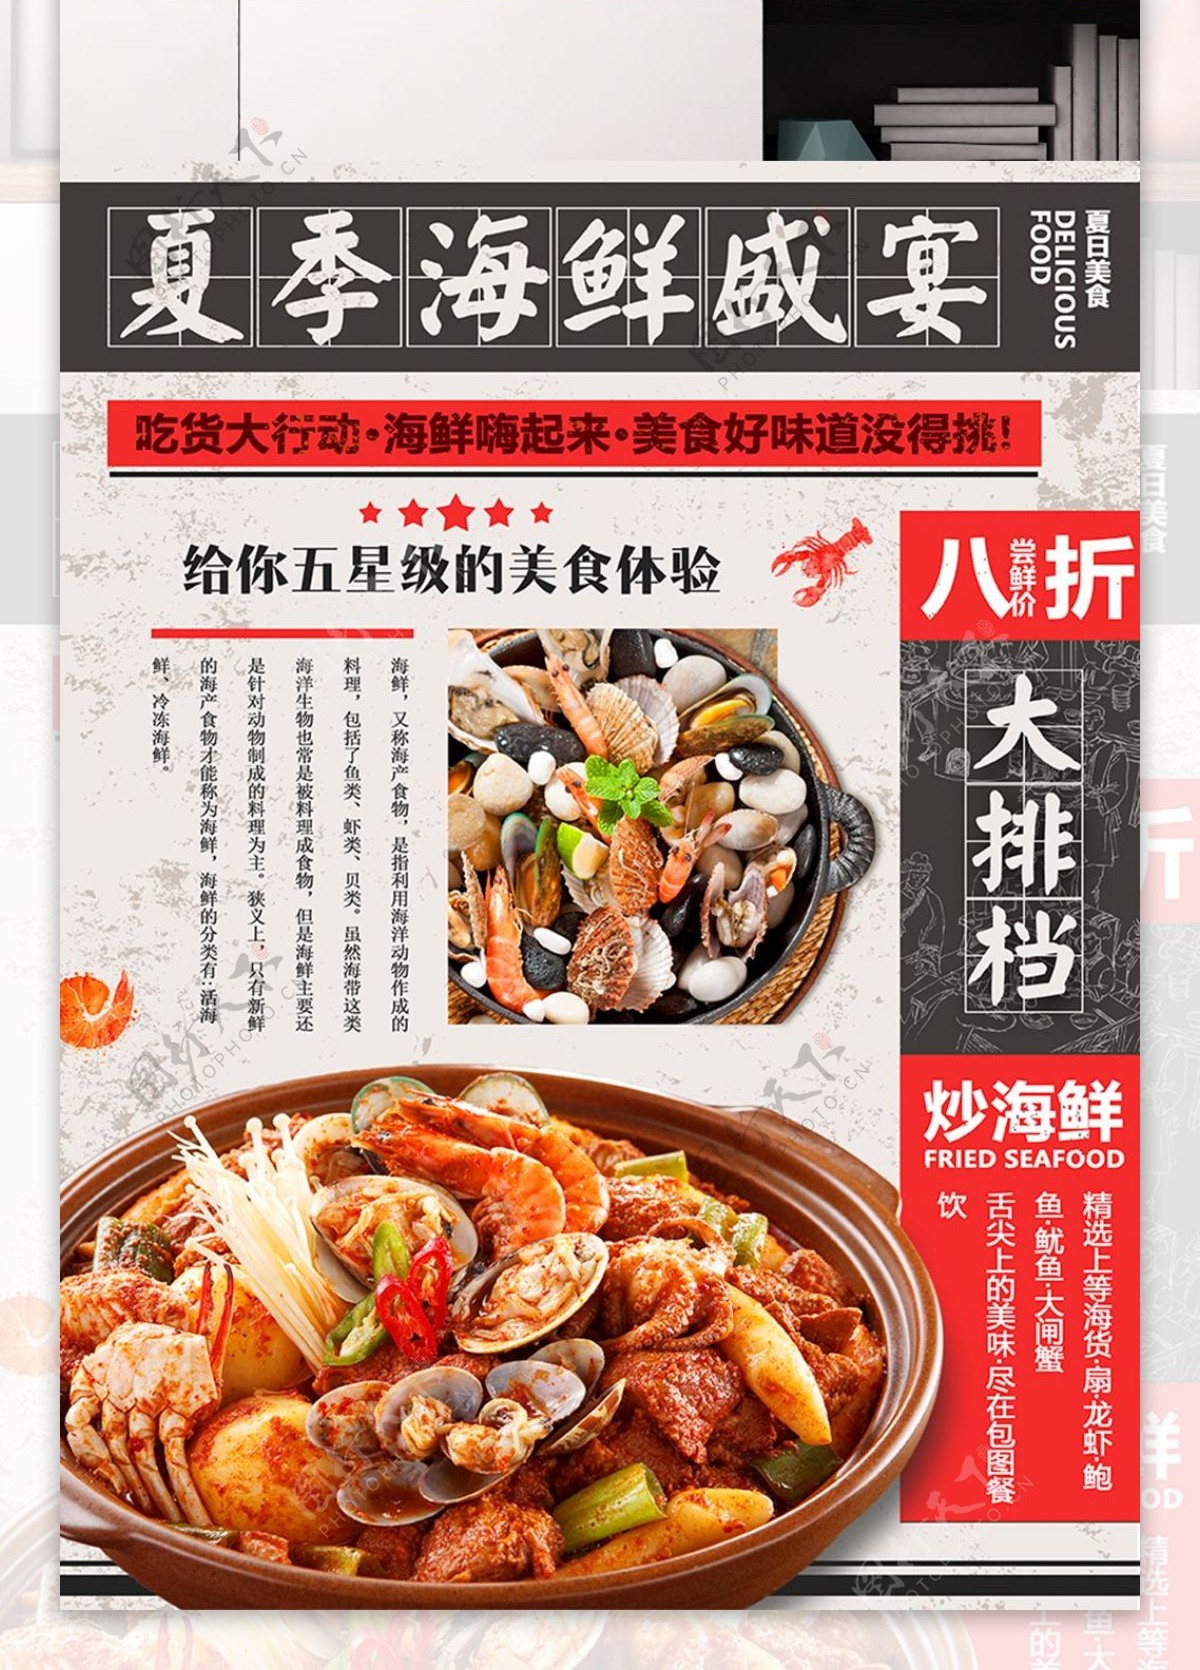 复古中国风夏季美食海鲜盛宴大排档折扣宣传海报